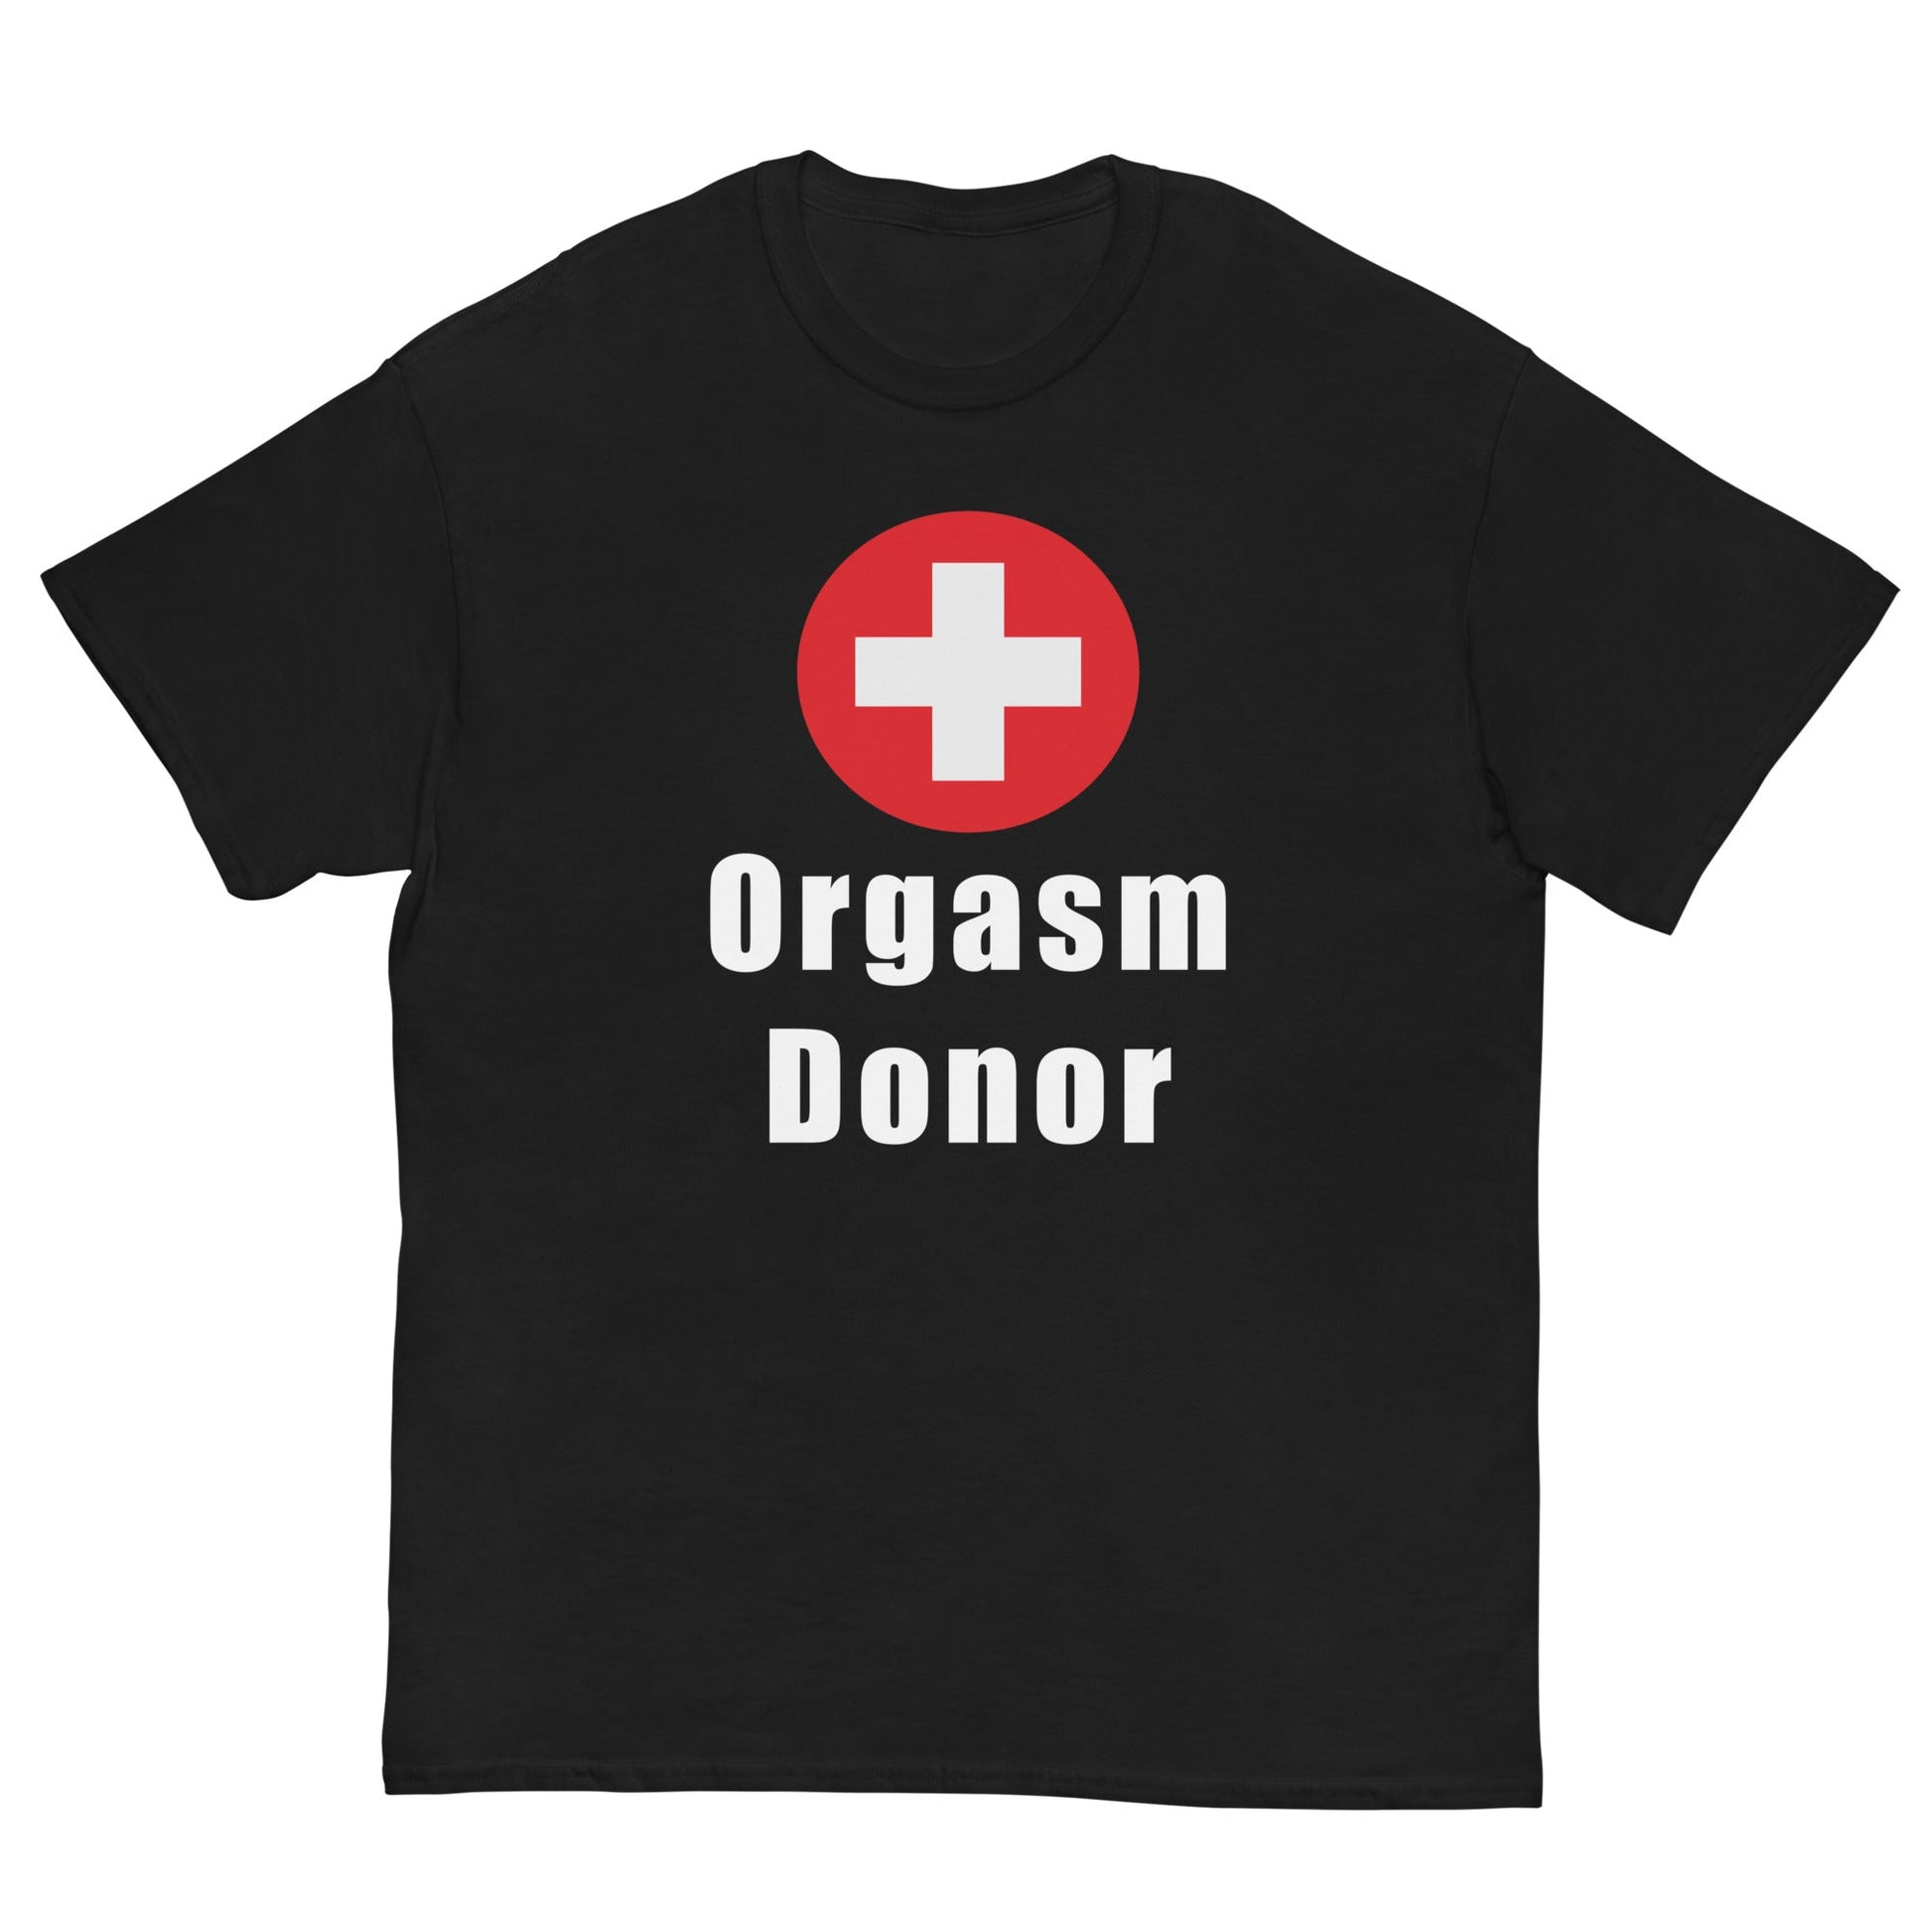 ORGASM DONOR - HardShirts